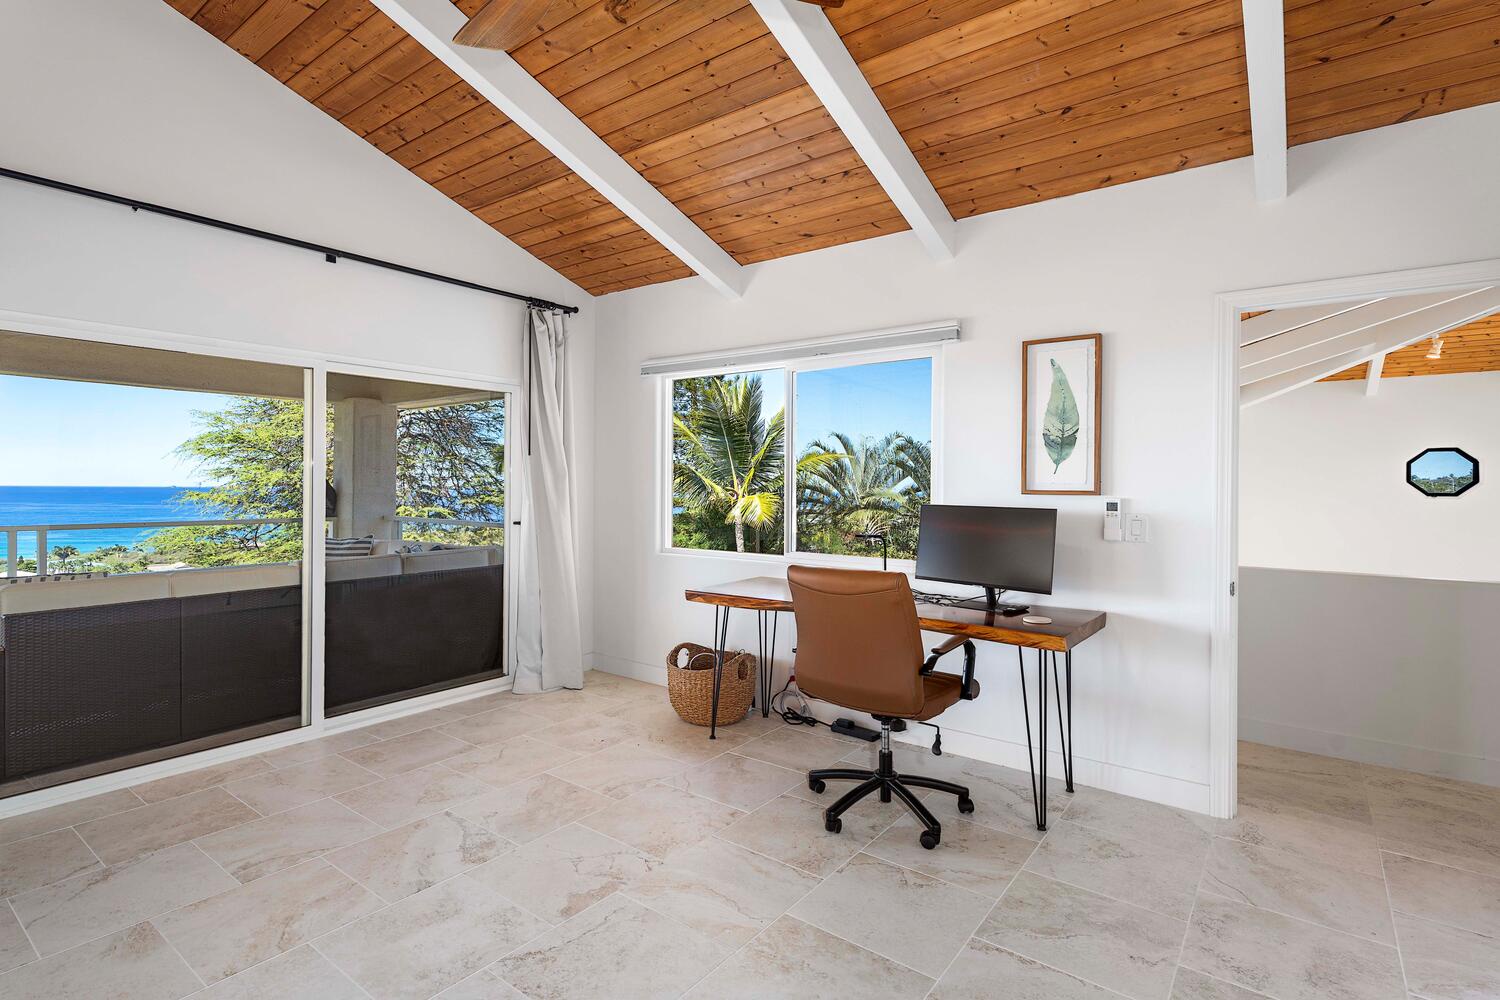 Kailua Kona Vacation Rentals, Ho'okipa Hale - A dedicated home office to stay productive!